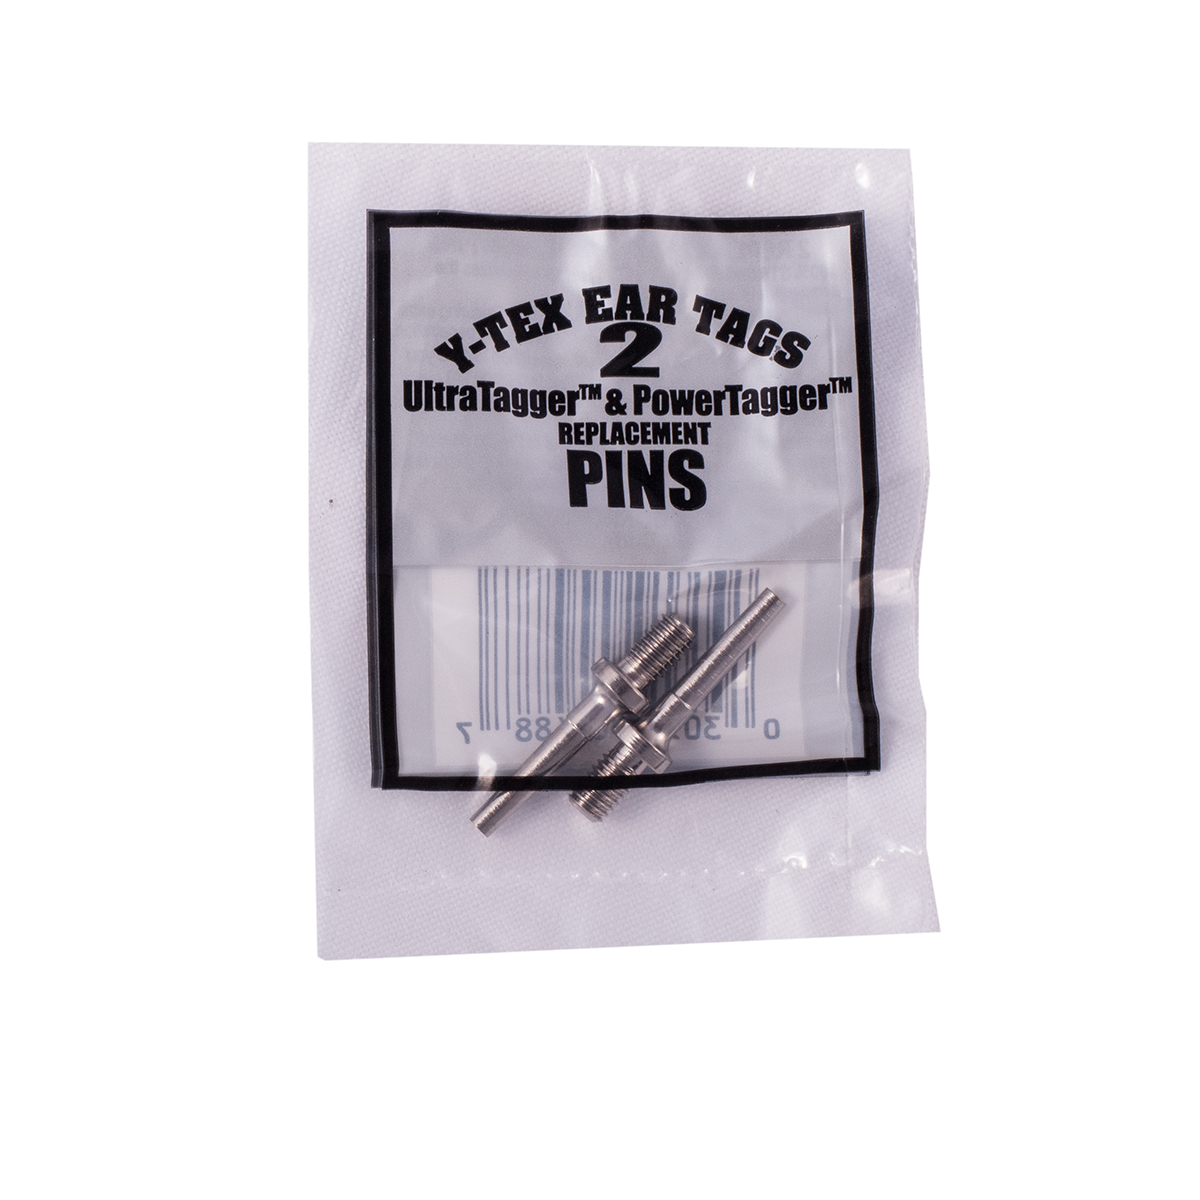 Y-Tex Applicator Pin 2 pack